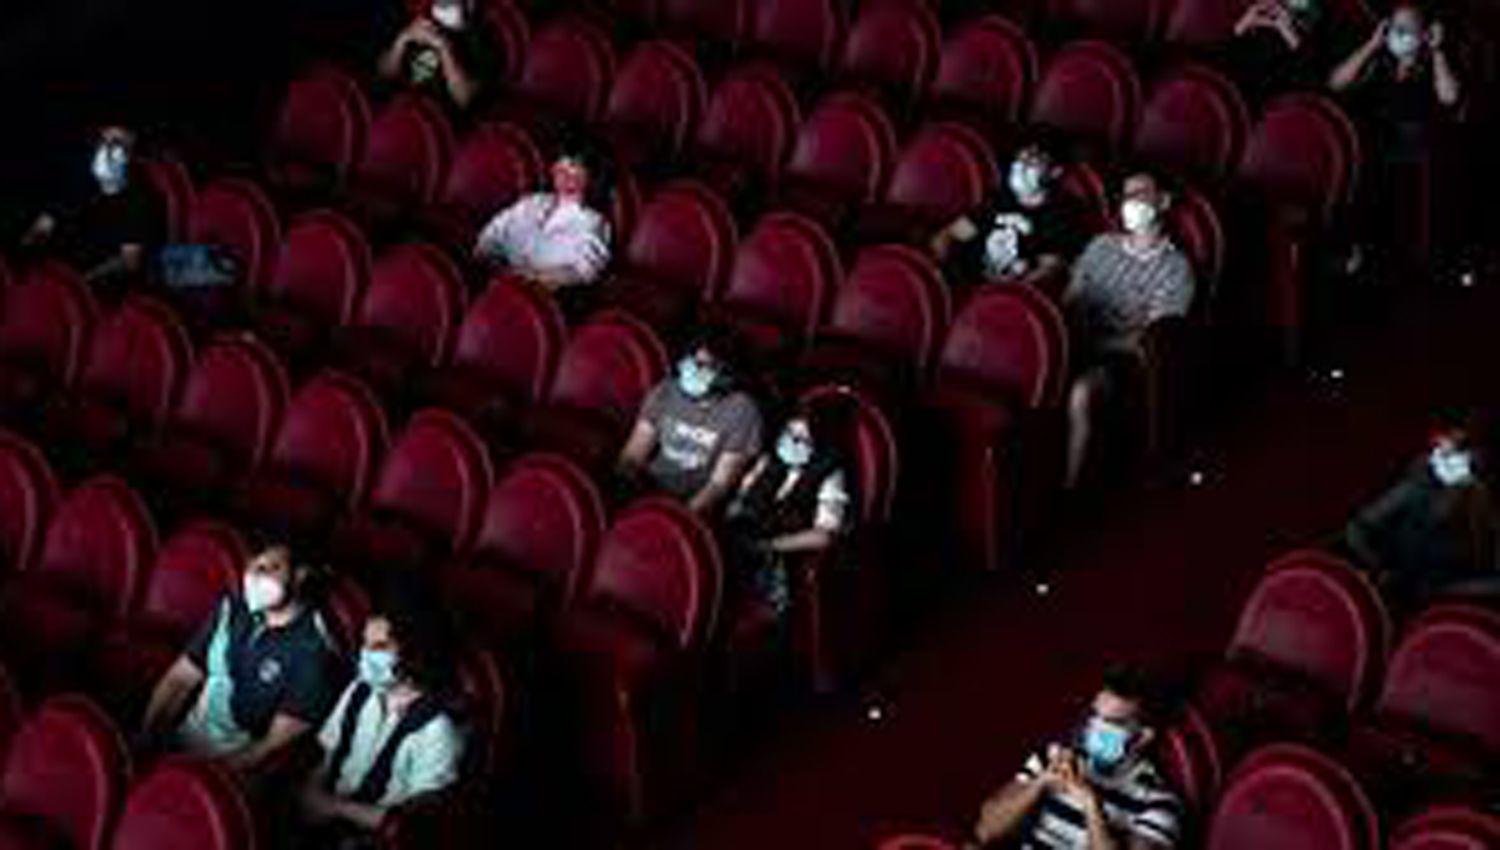 Las salas de cine reabriraacuten tras permanecer cerradas diez meses pero bajo un estricto protocolo acordado entre Nacioacuten y empresas